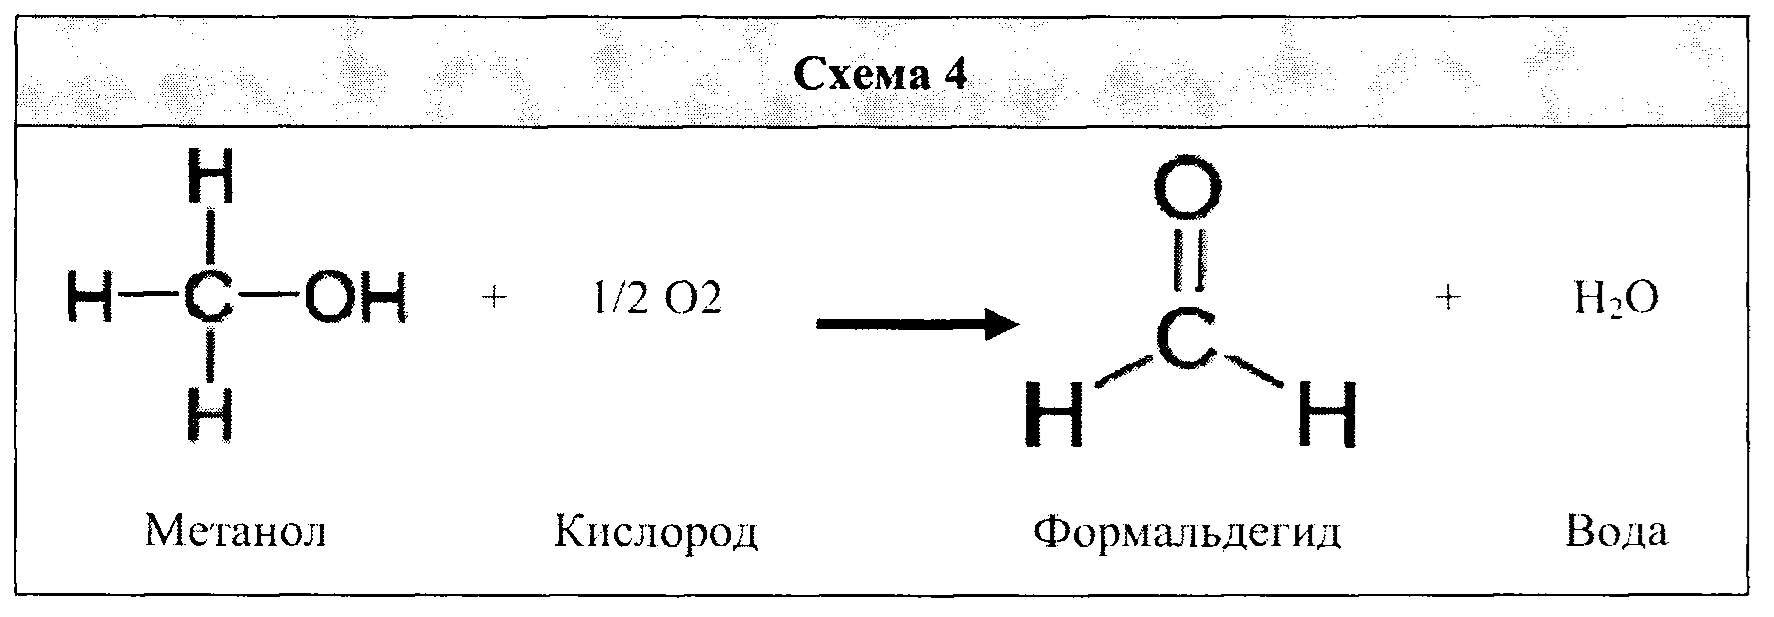 Ацетальдегид cu oh 2. Ацетальдегид и метанол. Ацетальдегид и вода. Технологическая схема формальдегида и ацетальдегида. Ацетальдегид и метанол реакция.